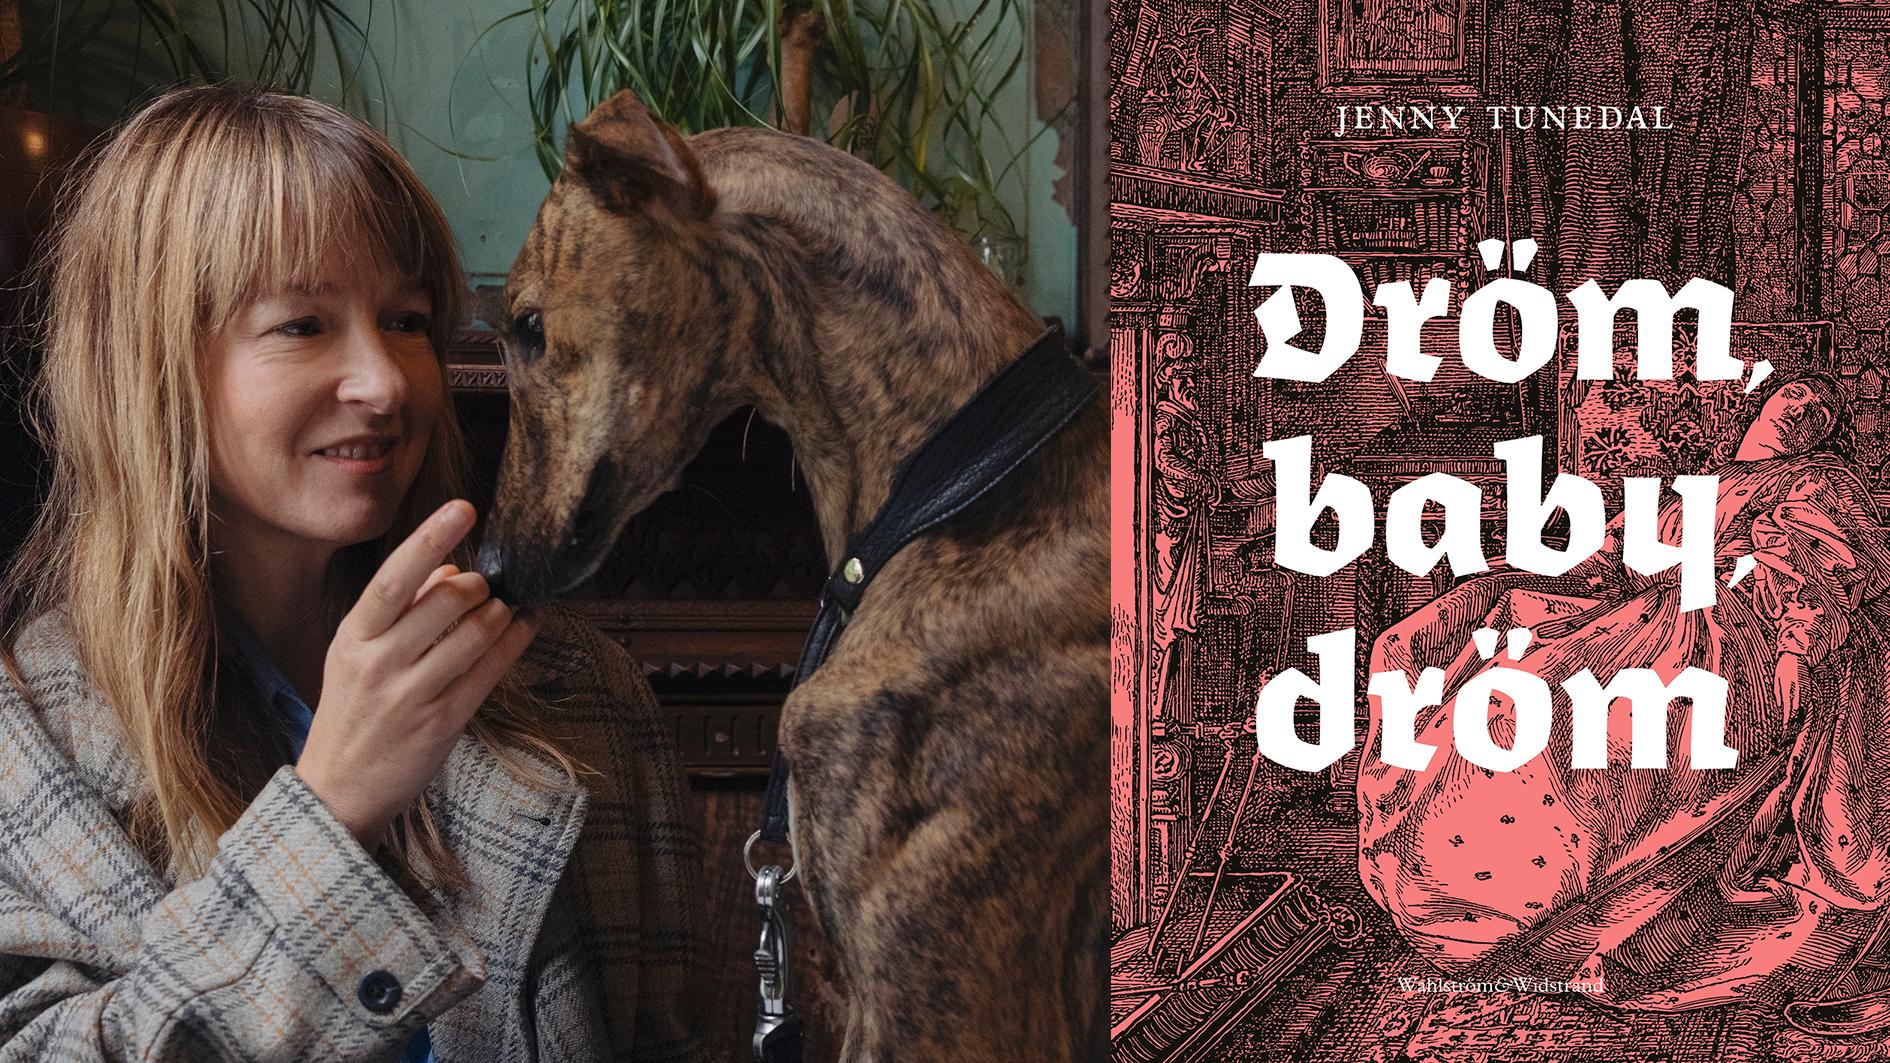 Jenny Tunedal (född 1973) har utkommer med sin sjätte diktsamling ”Dröm baby, dröm”. ”Jag kan bara kapitulera inför detta poetiska drömarbete ur det sargade folkhemmet” skriver Joni Hyvönen.